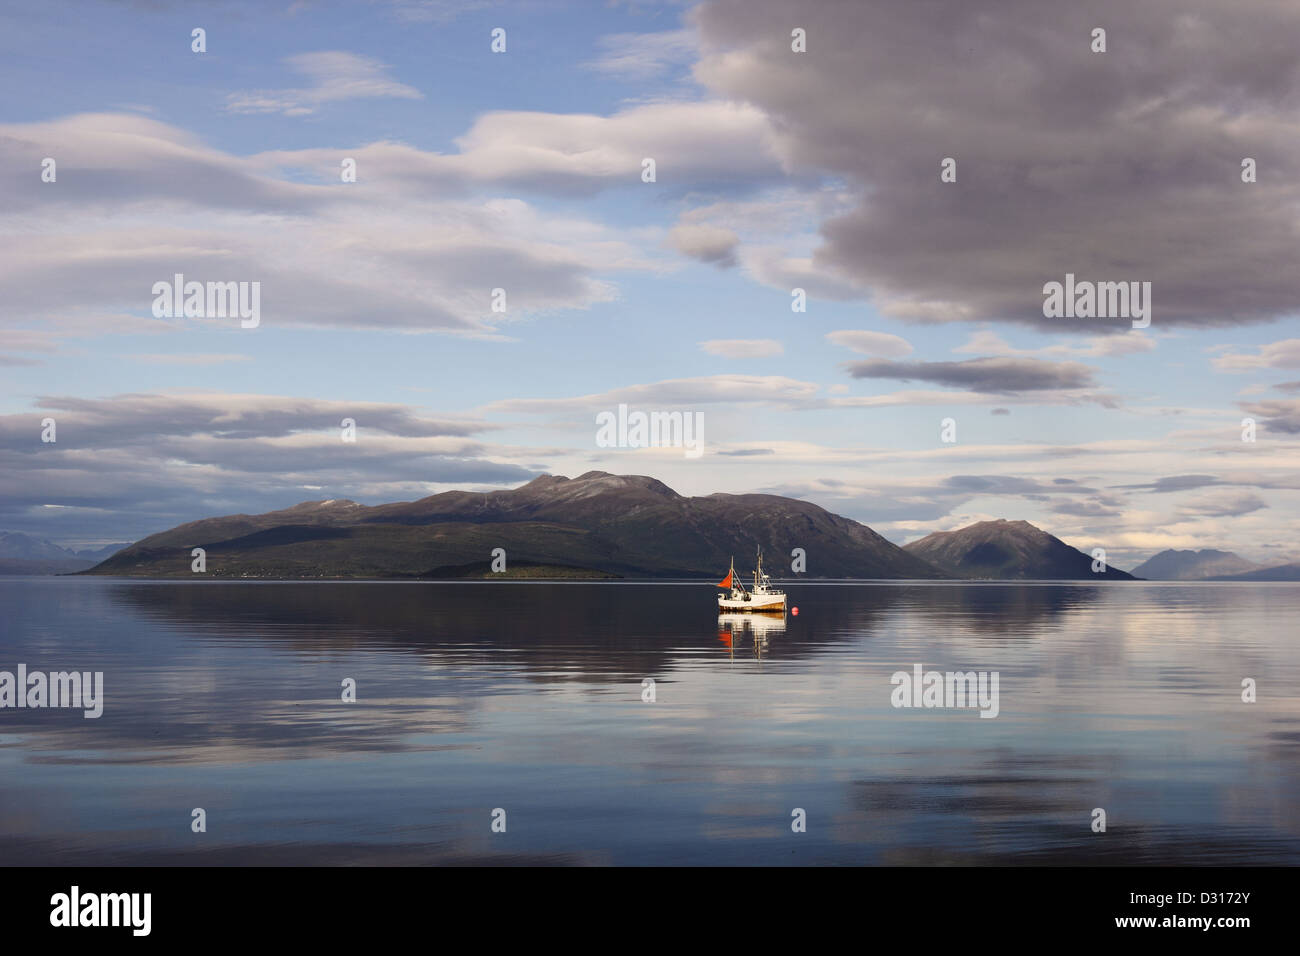 Ruhige Szene in den nördlichen norwegischen Fjorden - ein einsames Fischerboot in den ruhigen Gewässern. Stockfoto